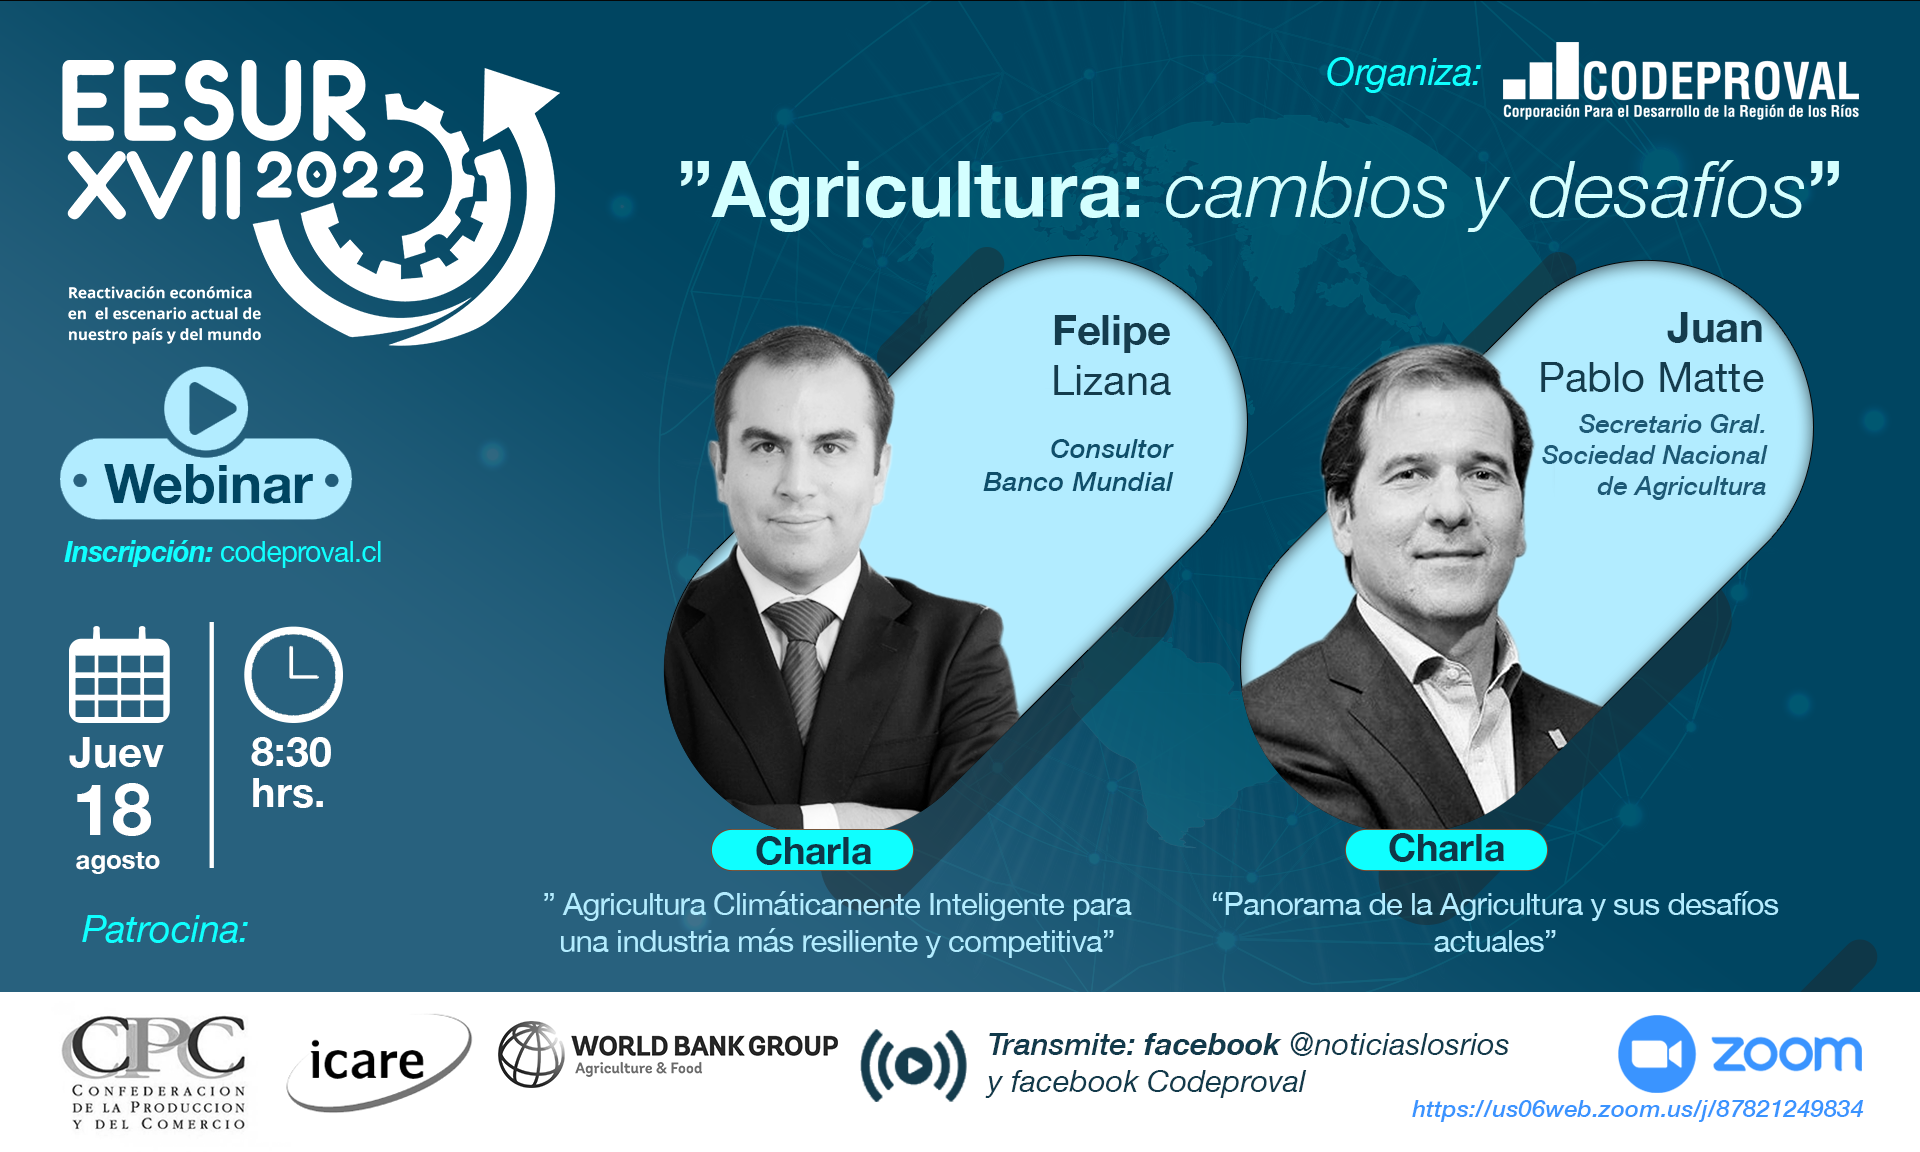 Revive webinar EESUR "Agricultura, cambios y desafíos"